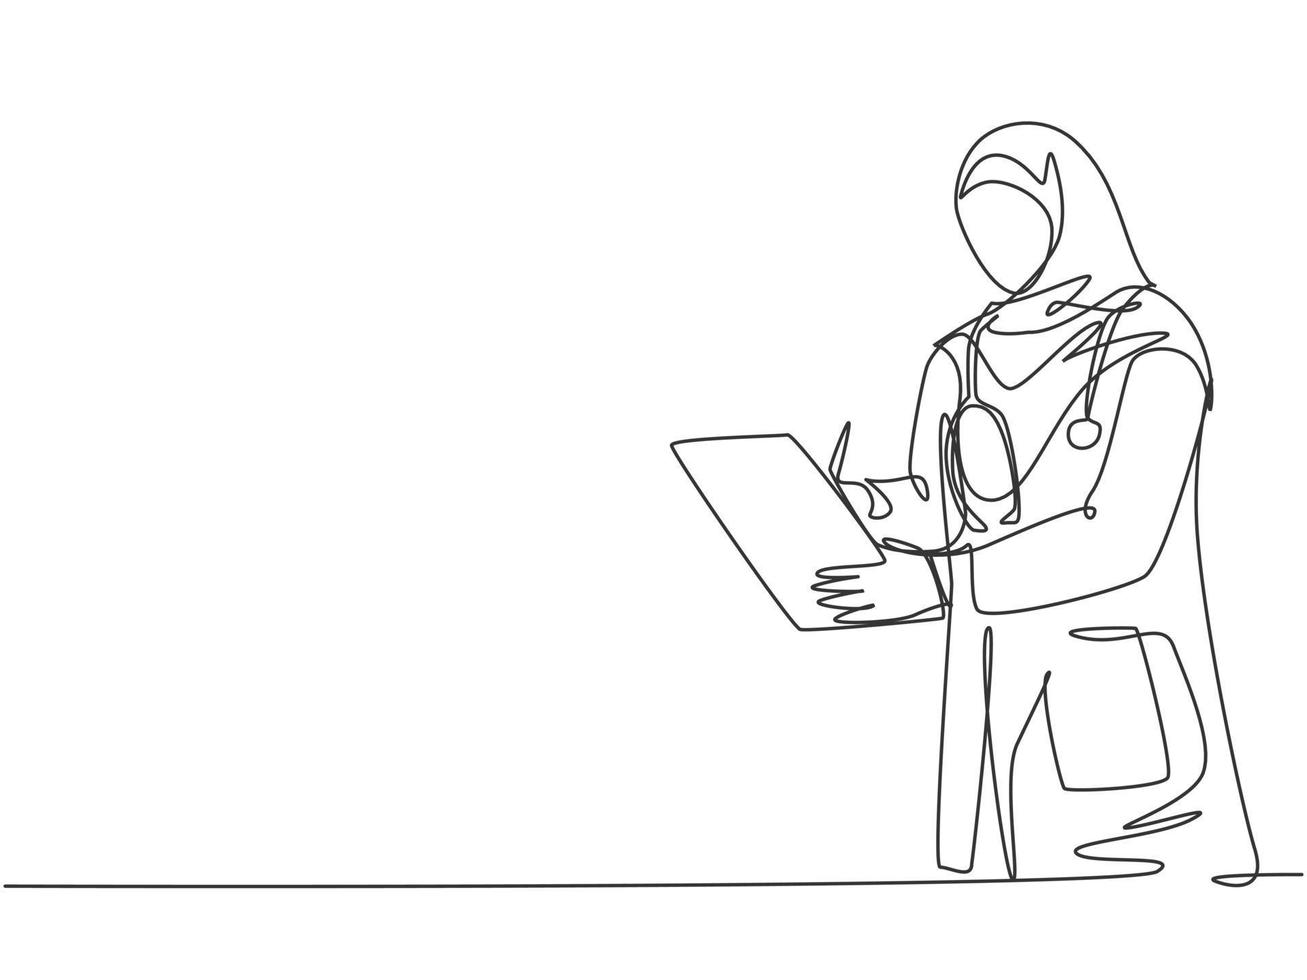 un disegno a tratteggio di un giovane medico arabo musulmano che indossa l'hijab che scrive referto medico negli appunti in ospedale. concetto di assistenza sanitaria medica linea continua disegnare disegno vettoriale illustrazione